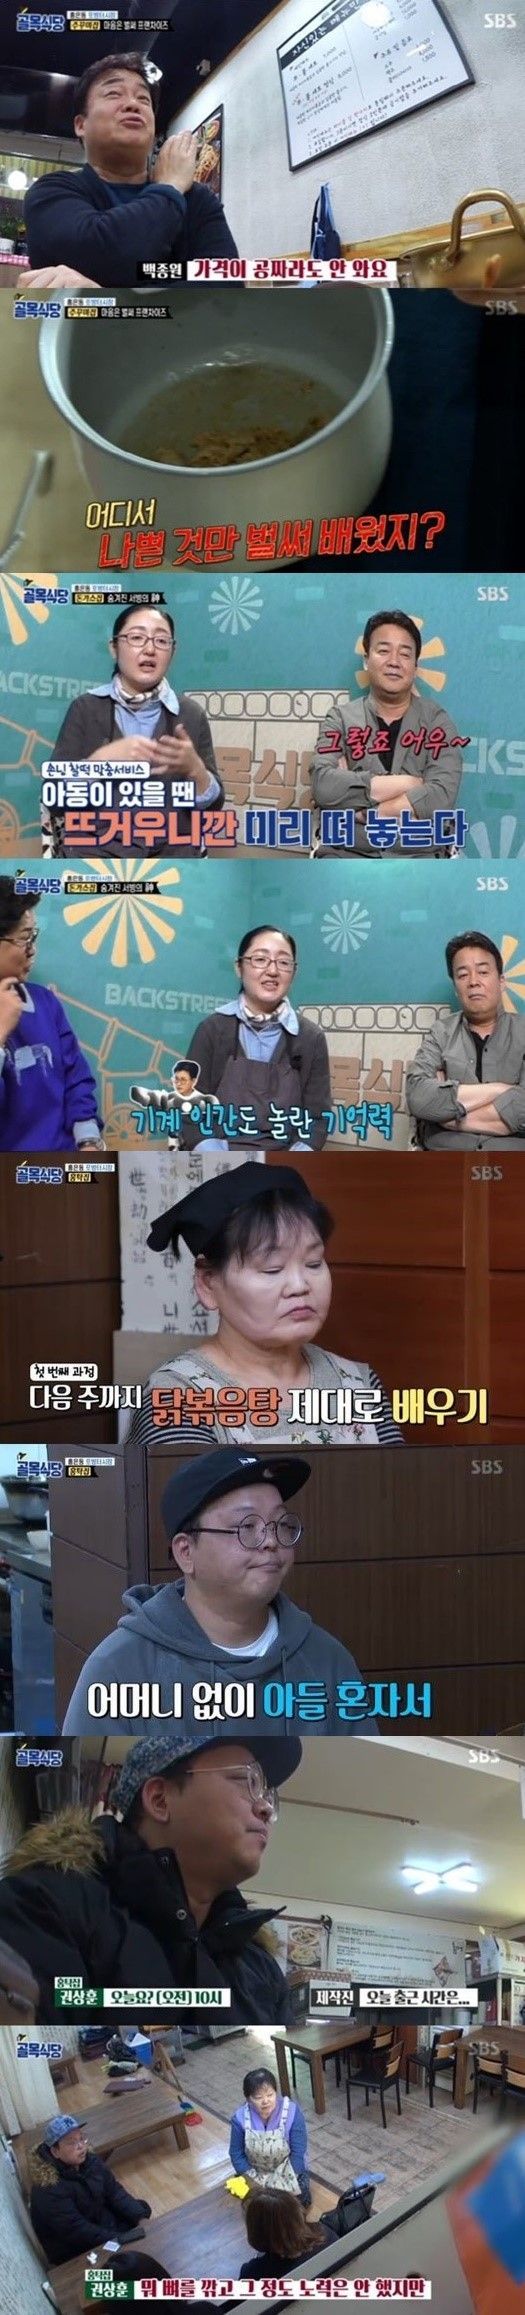 '골목식당' 홍탁집 아들, 제작진 긴급면담 사태…'최고의 1분' 9.6% 